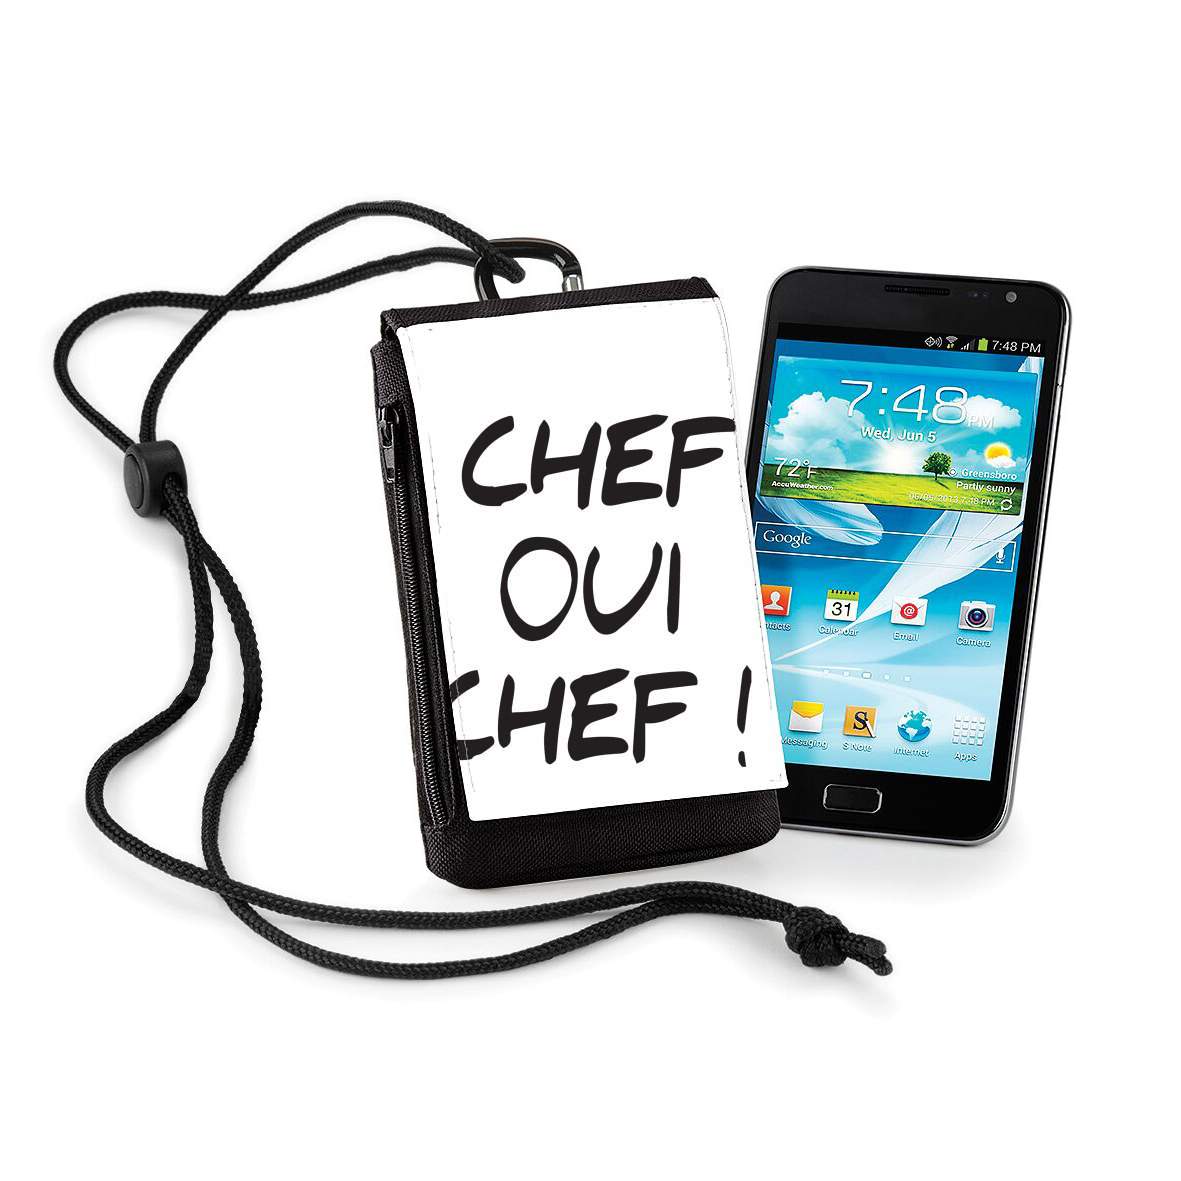 Pochette de téléphone - Taille normal pour Chef Oui Chef humour